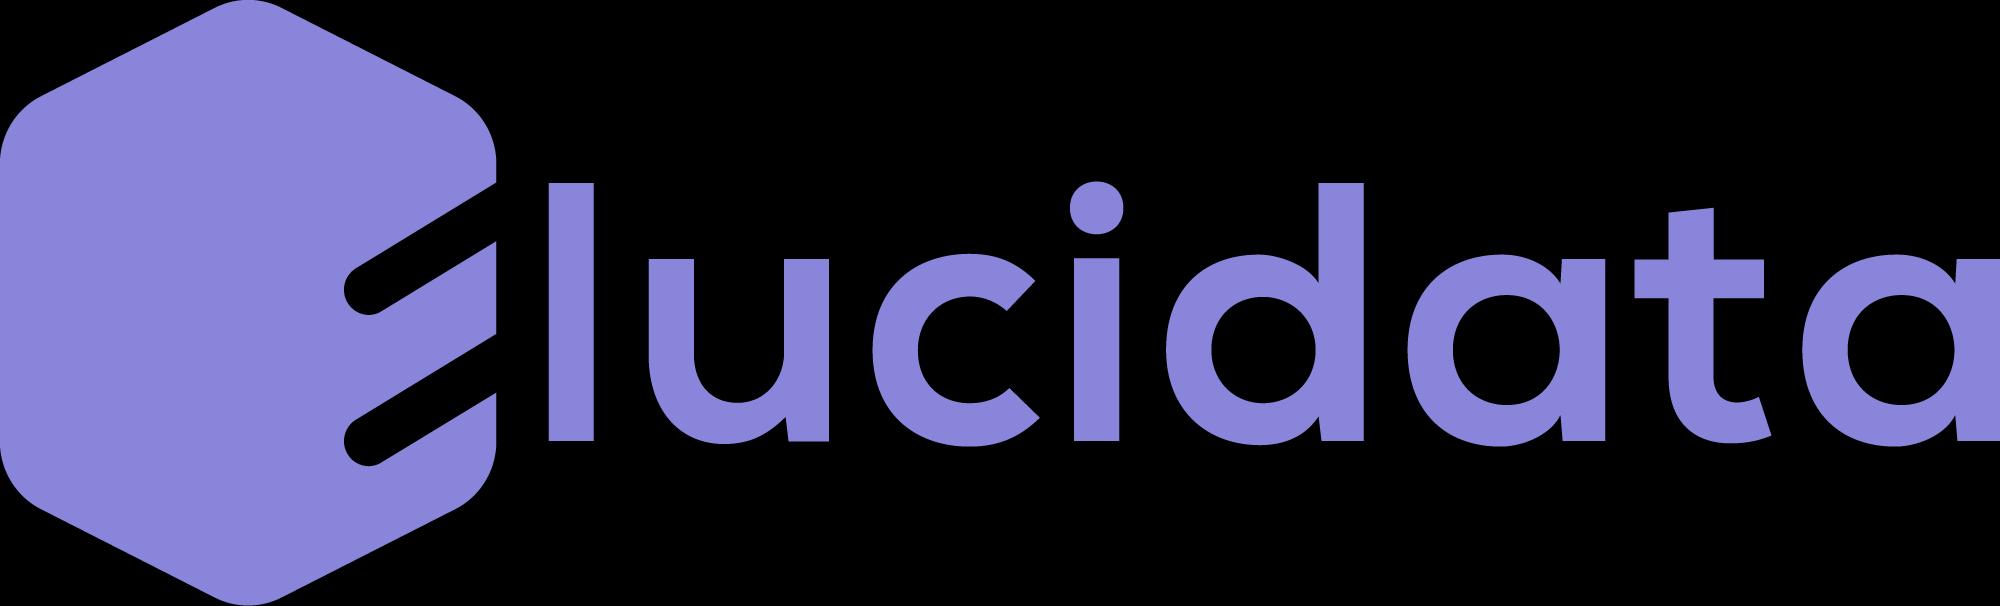 Elucidata_logo